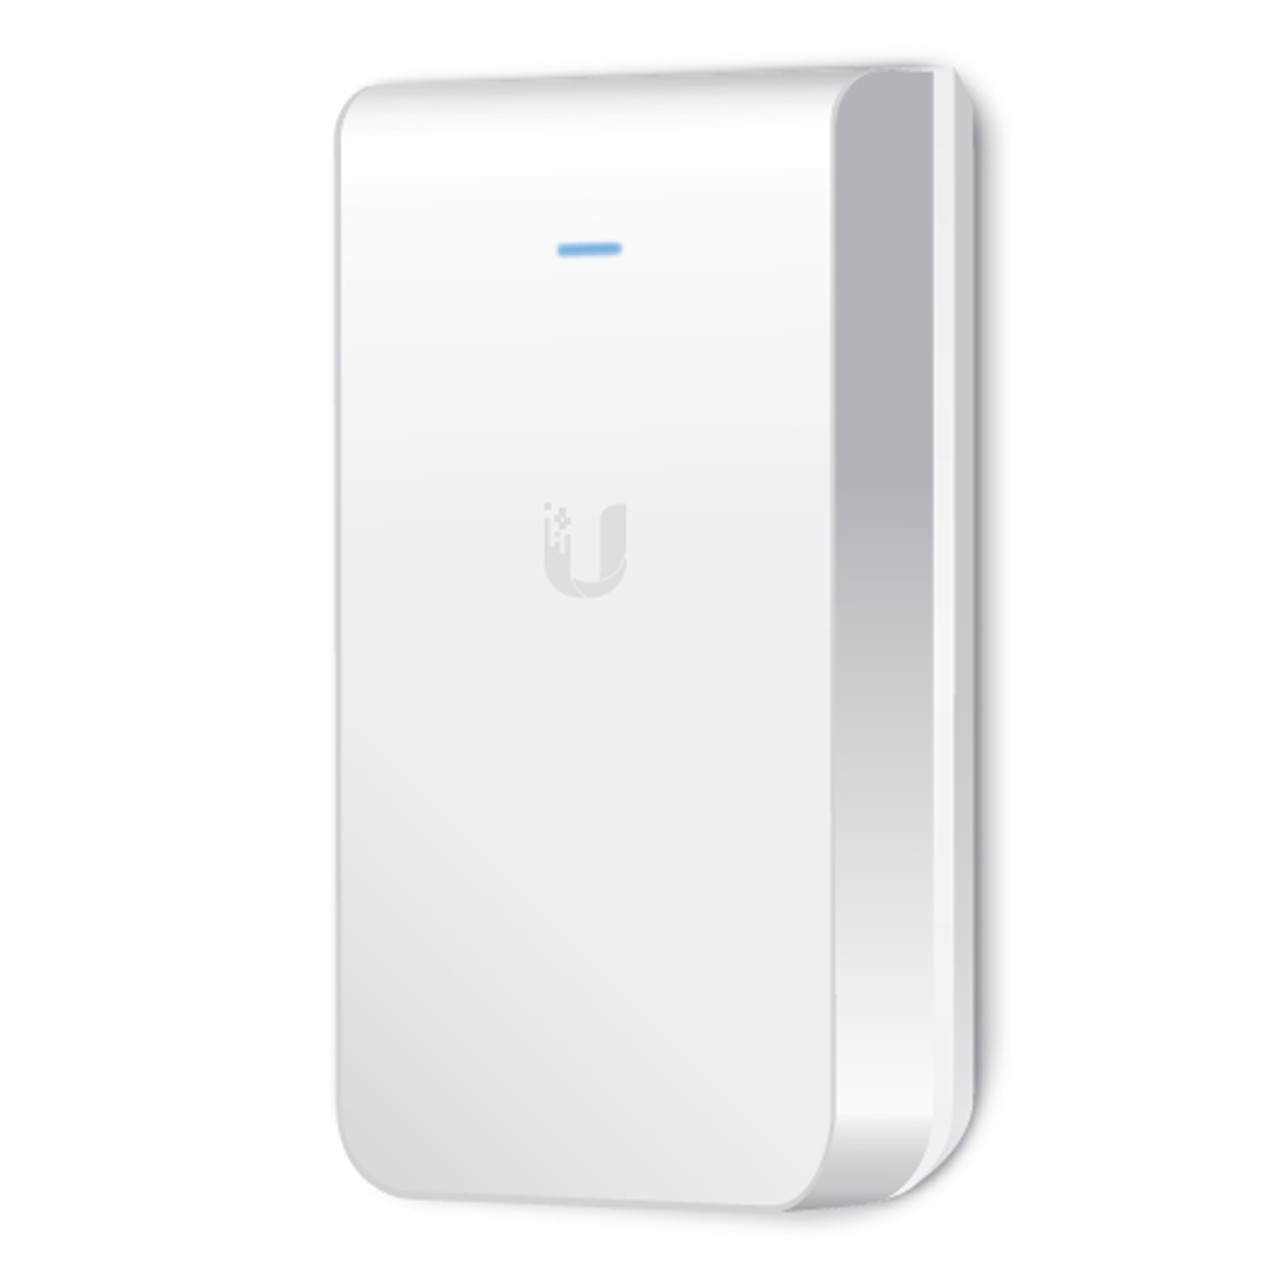 Ubiquiti UAP-AC-IW In-Wall 802.11ac Wi-Fi Access